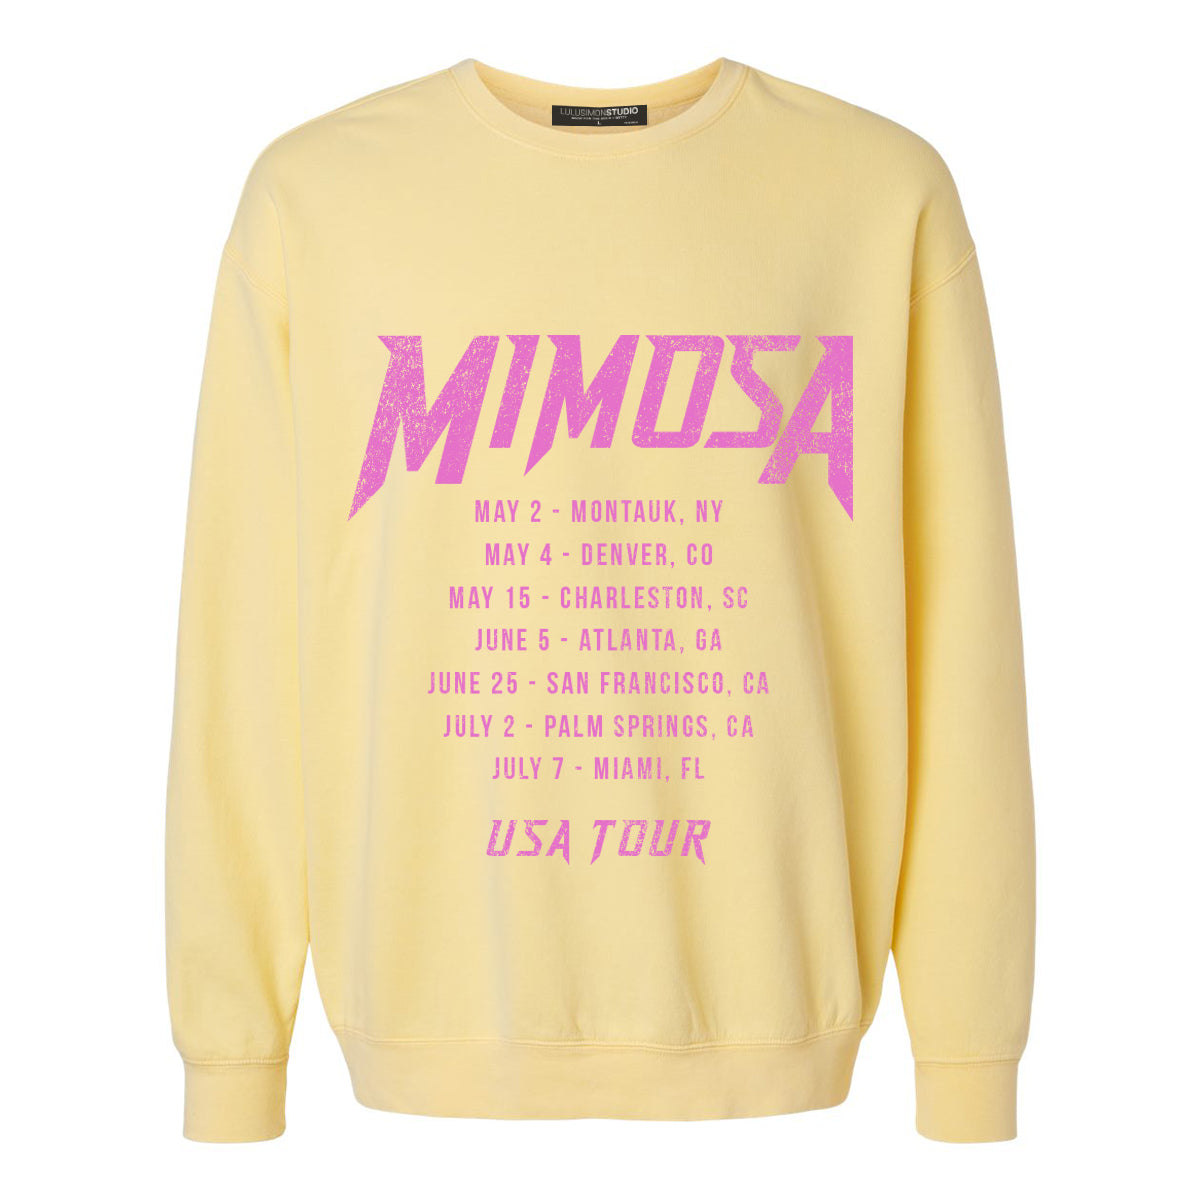 Mimosa Tour Garment Dye Sweatshirt